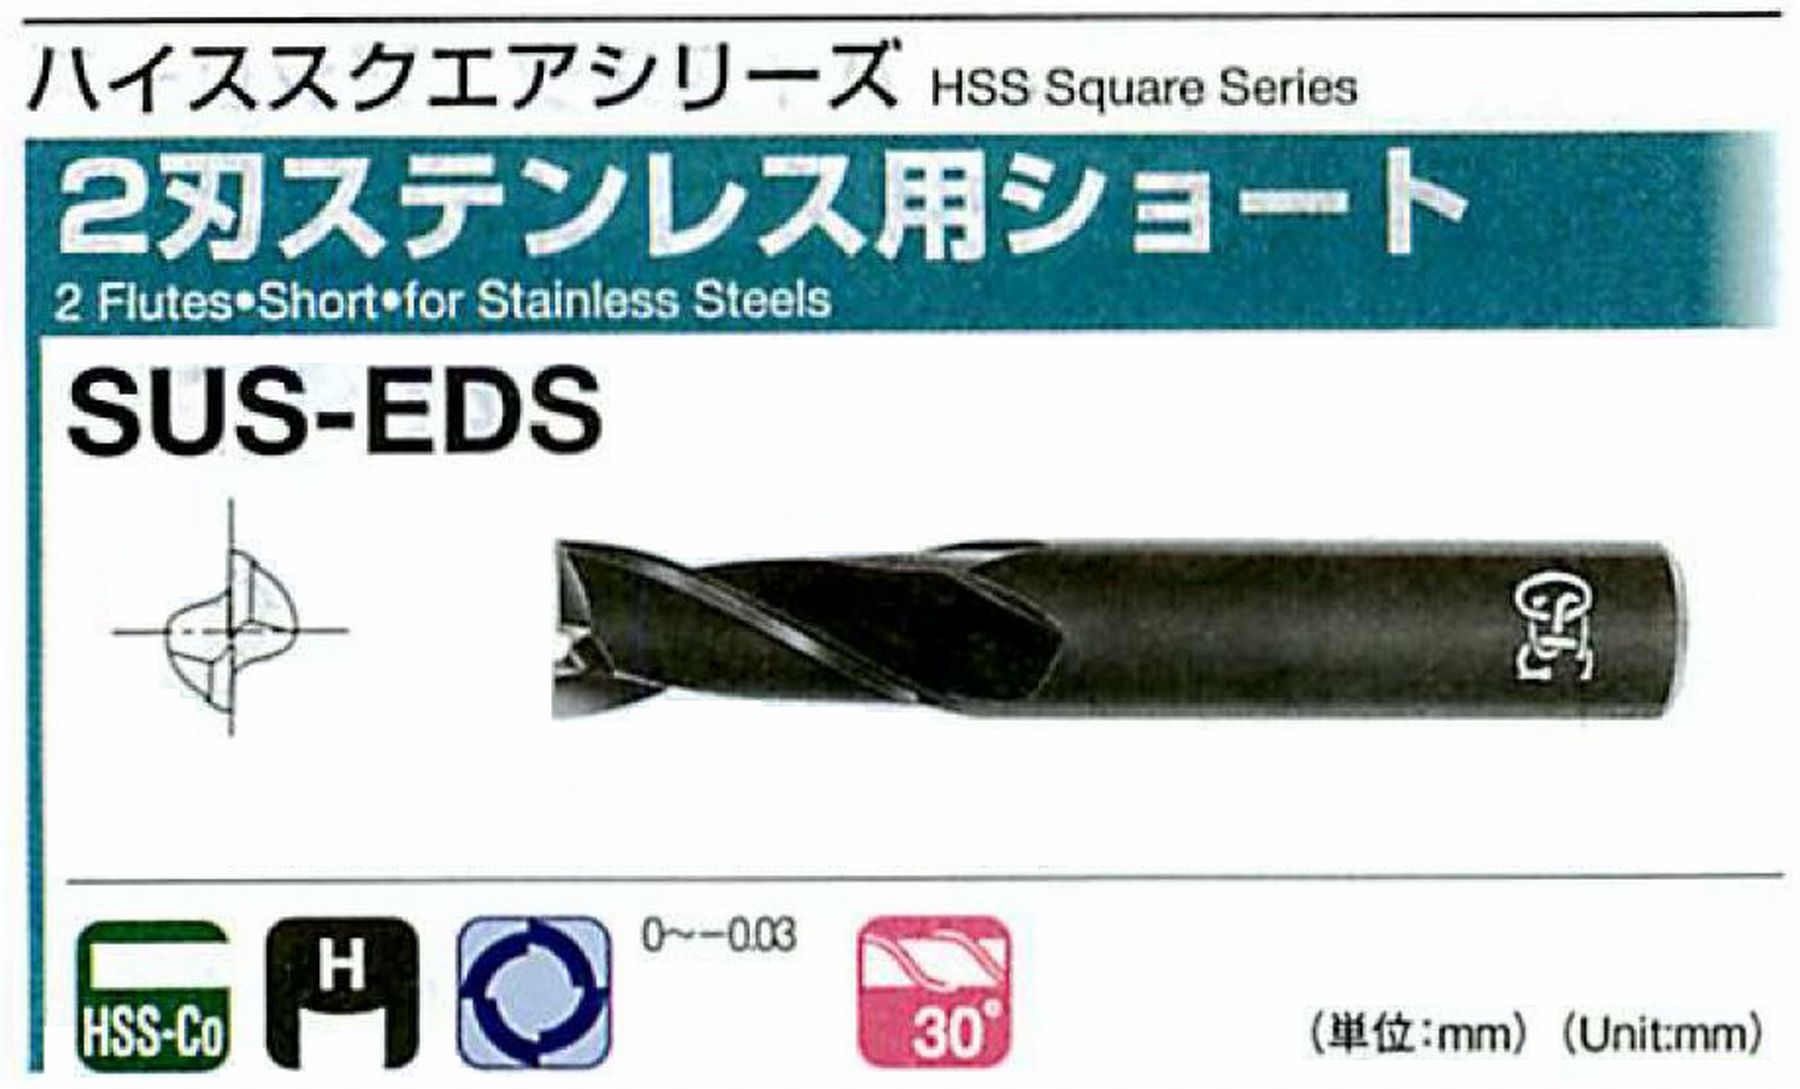 オーエスジー/OSG 2刃ステンレス用ショート SUS-EDS 外径23 全長120 刃長50 シャンク径25mm